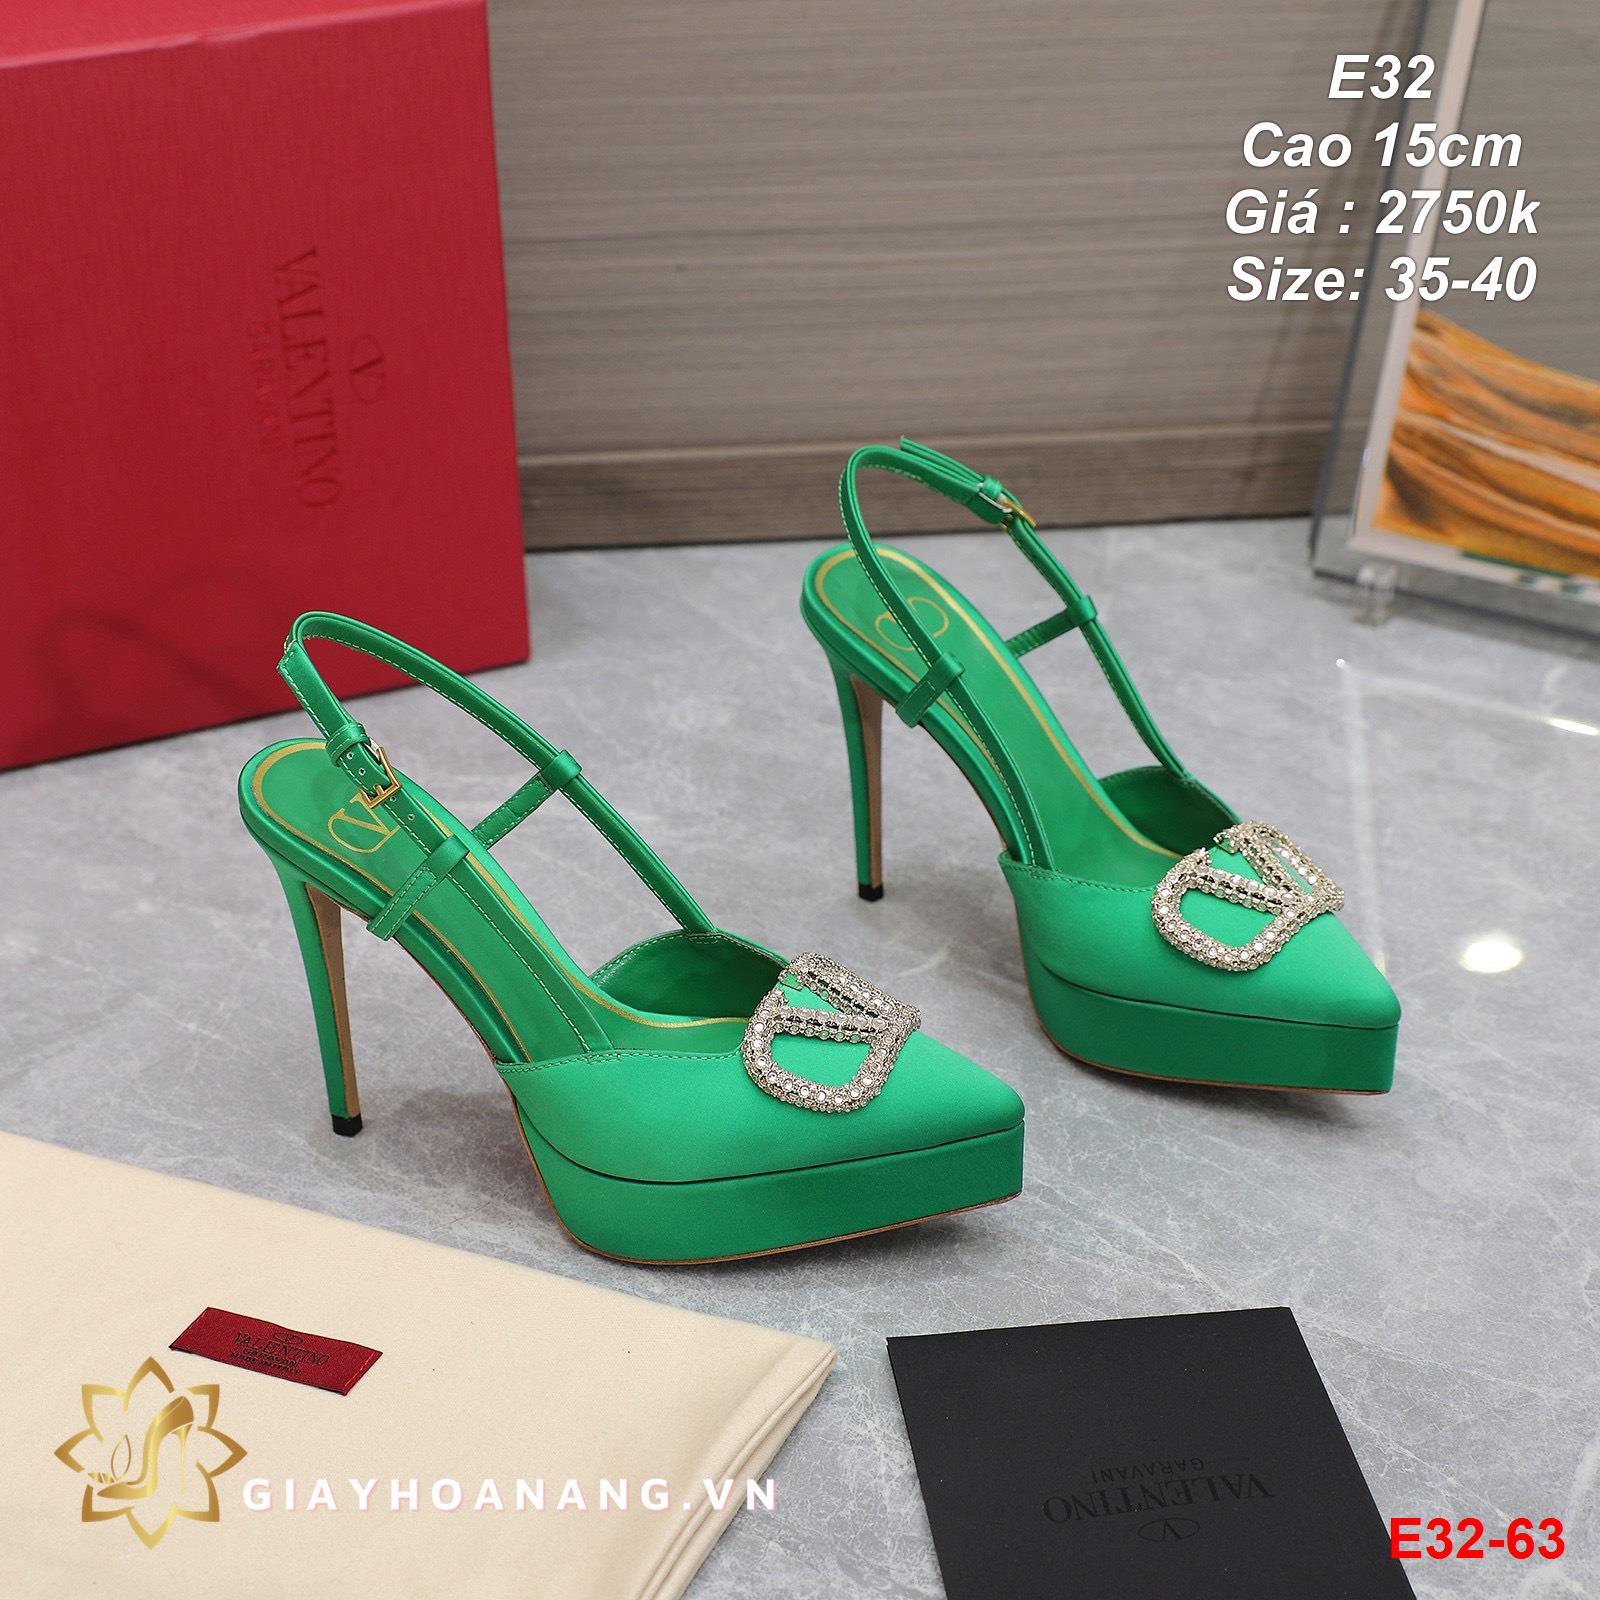 E32-63 Valentino sandal cao 15cm siêu cấp